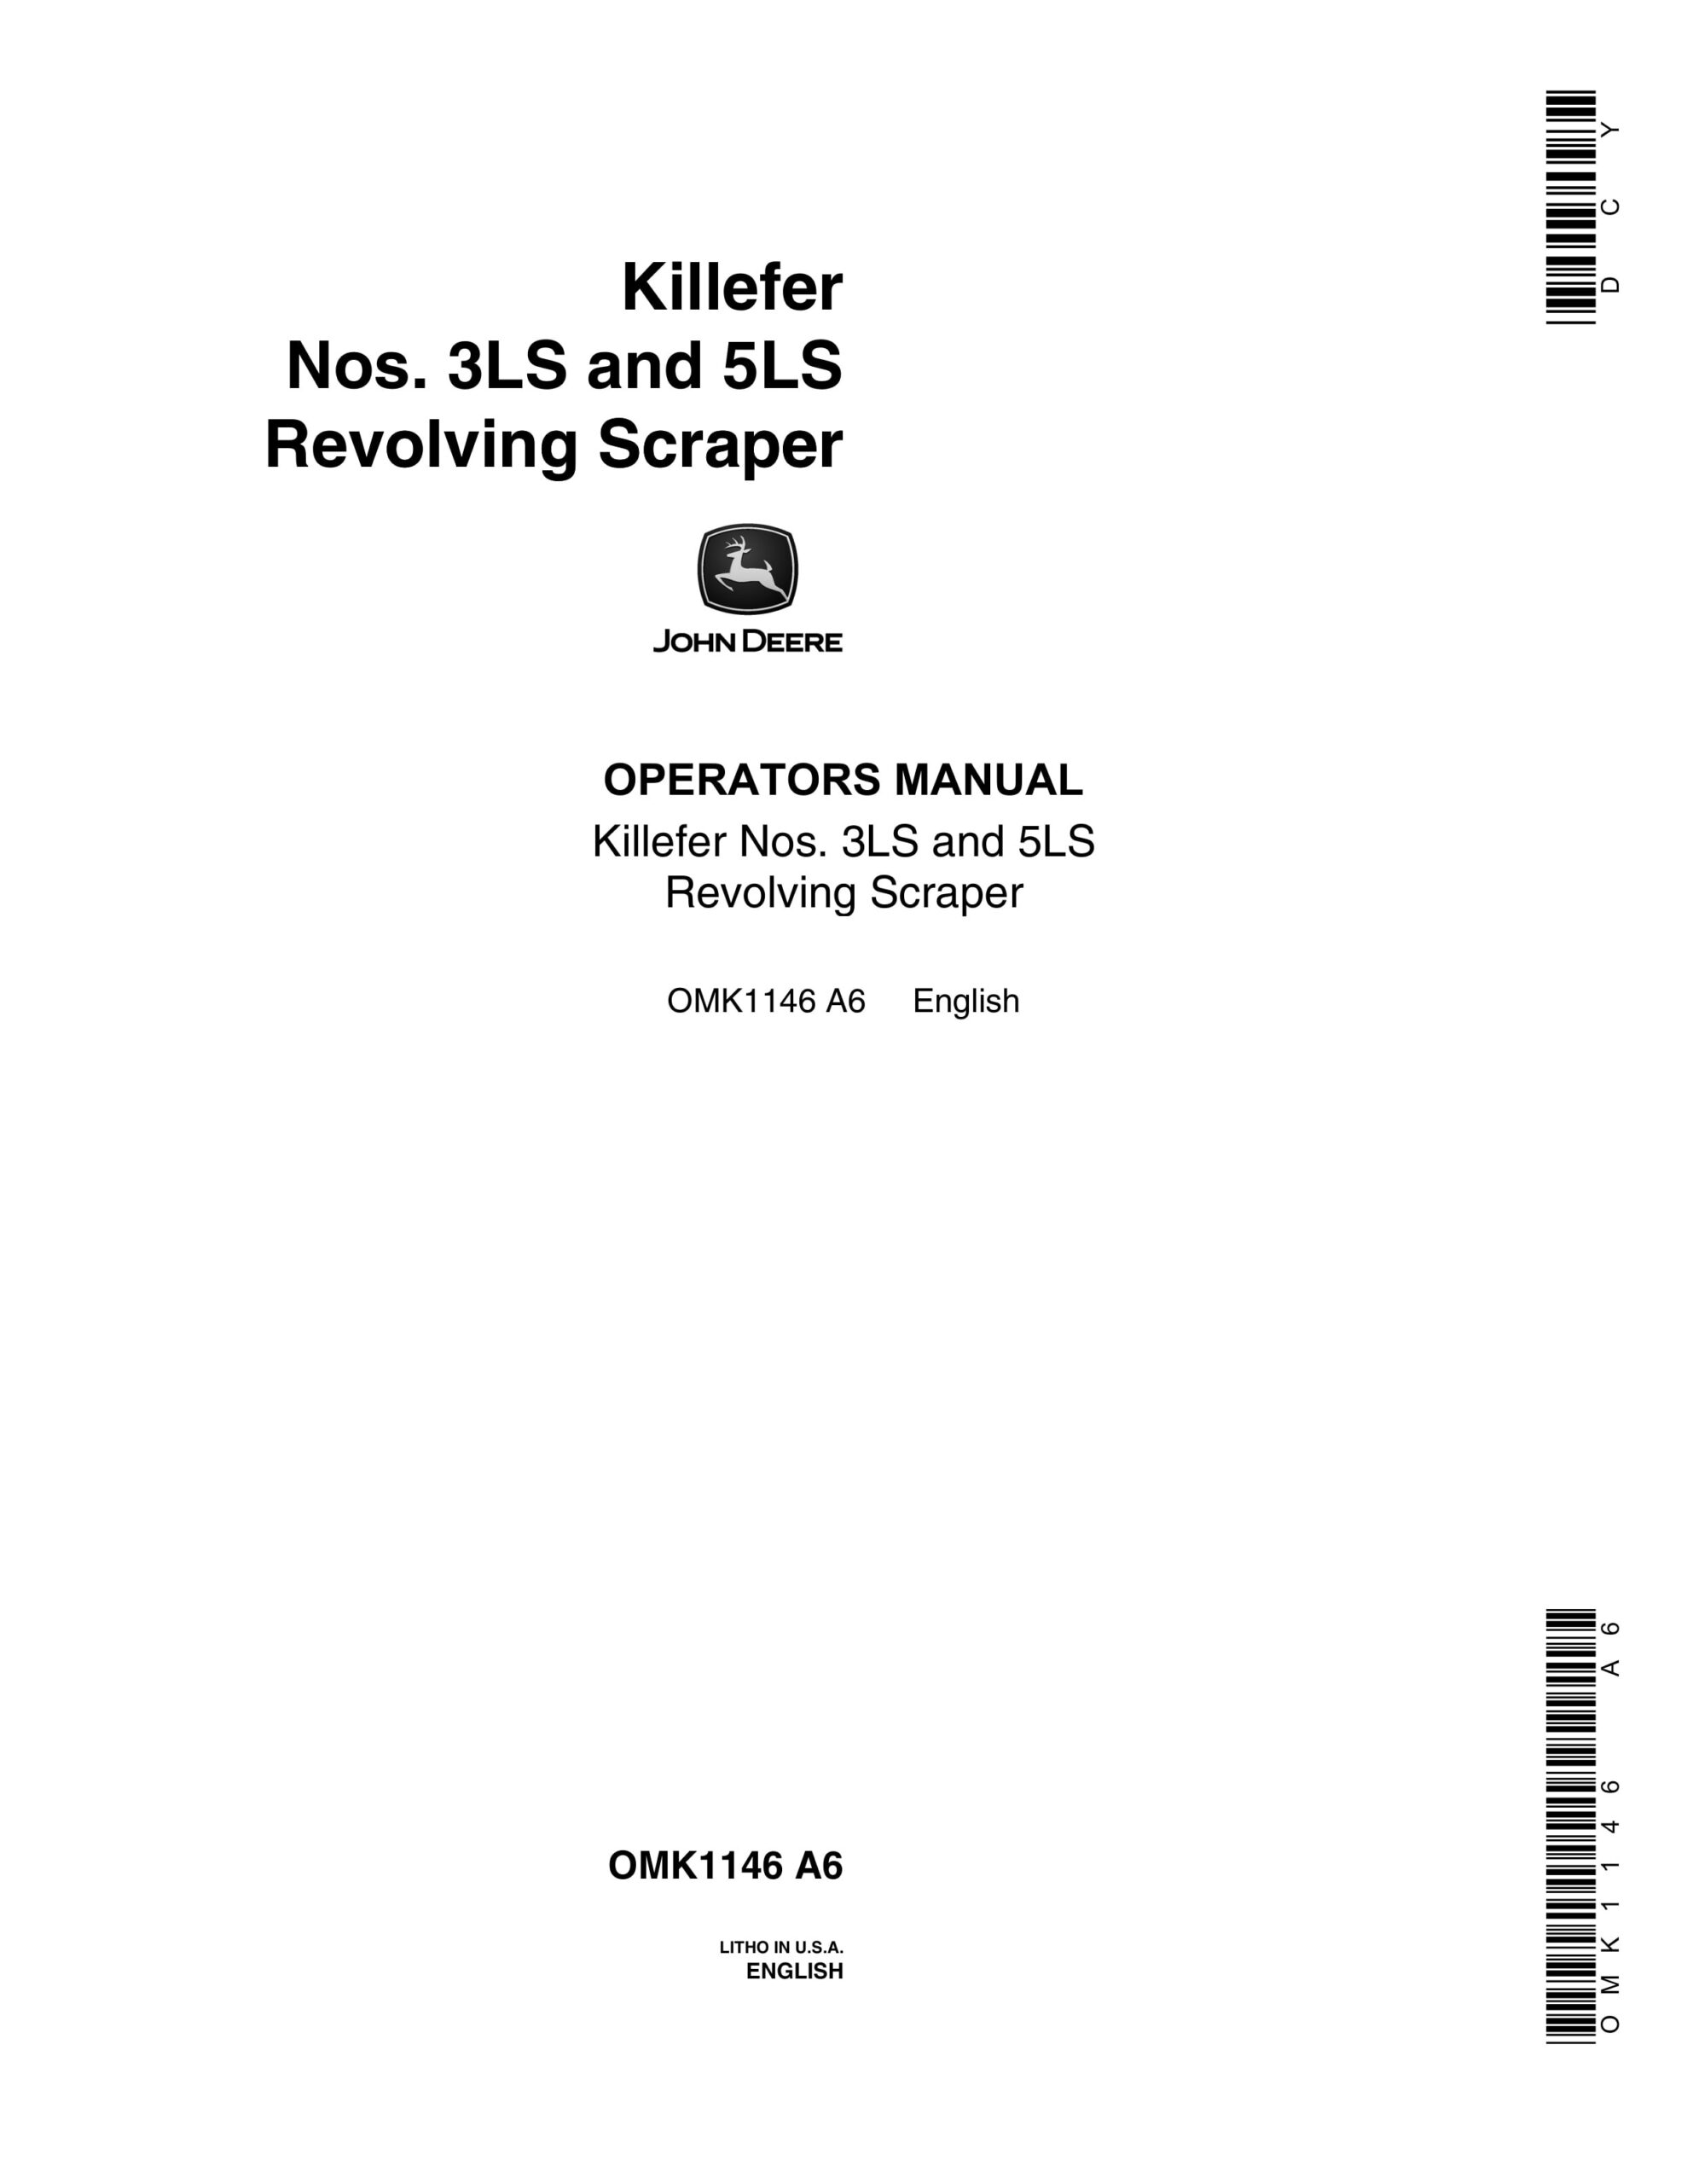 John Deere Killefer Nos. 3LS and 5LS Revolving Scraper Operator Manual OMK1146-1